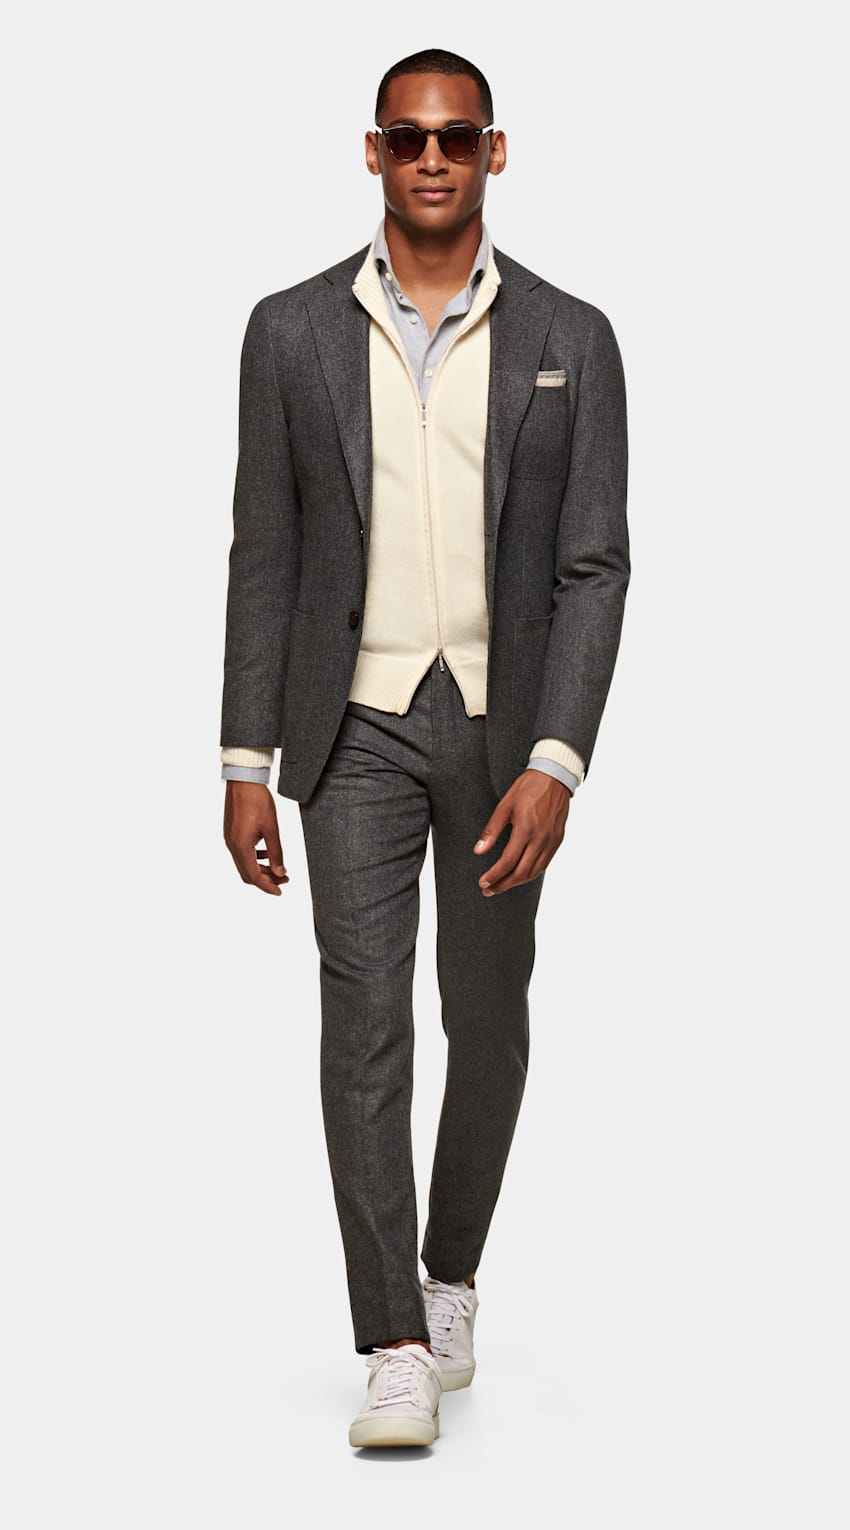 SUITSUPPLY 意大利 Vitale Barberis Canonico 生产的面料 Havana Grey Suit